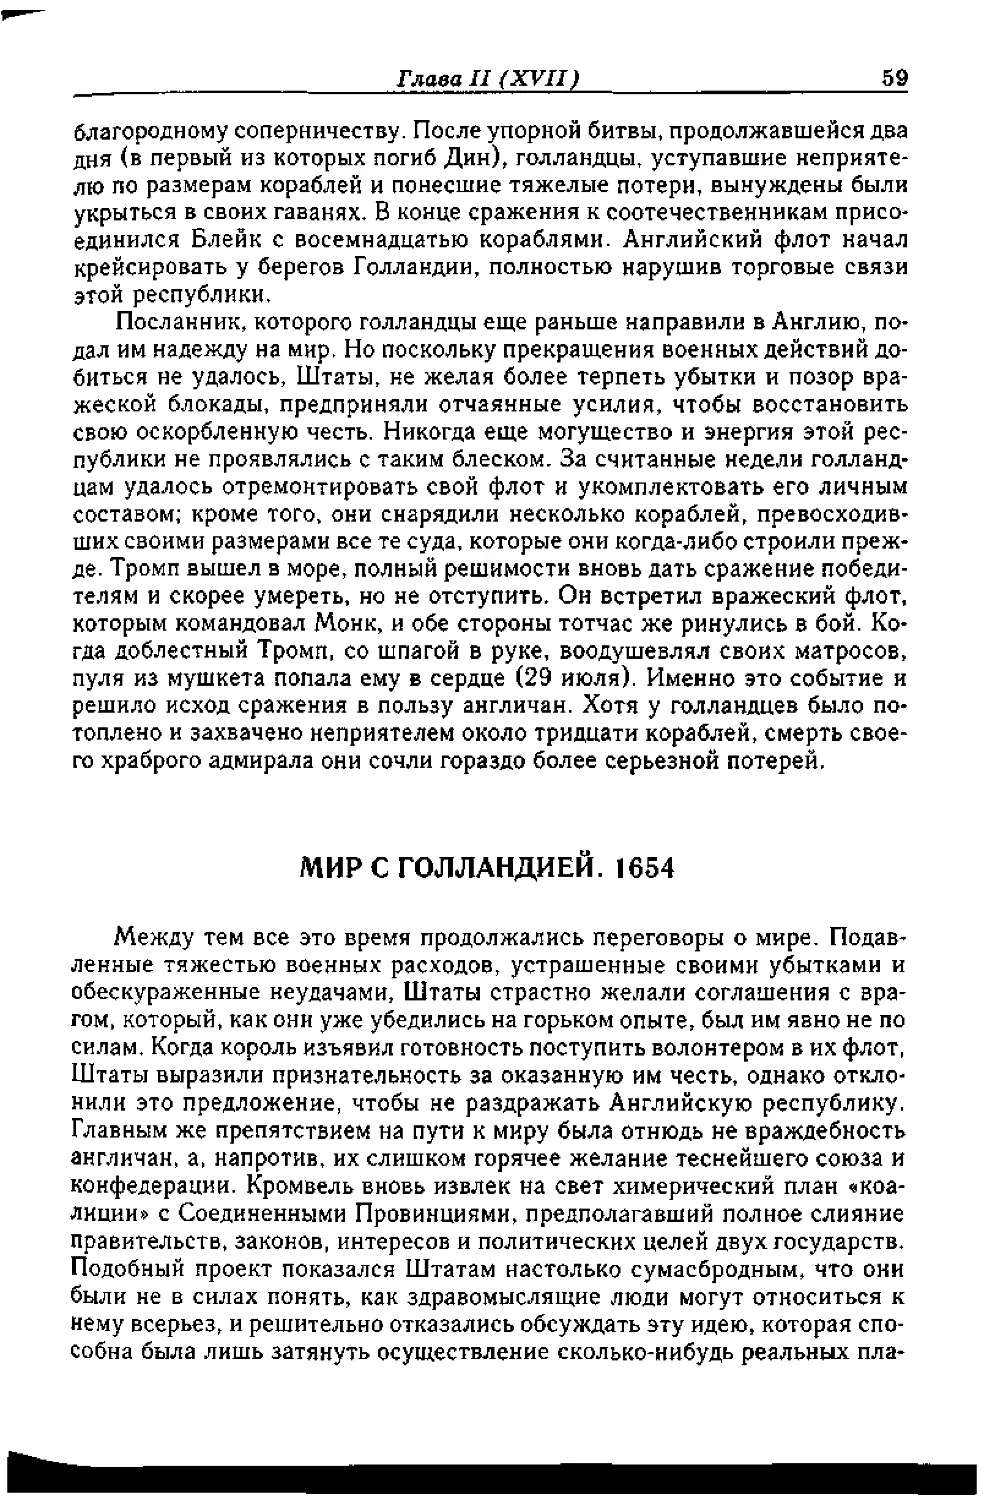 ﻿МИР С ГОЛЛАНДИЕЙ. 165